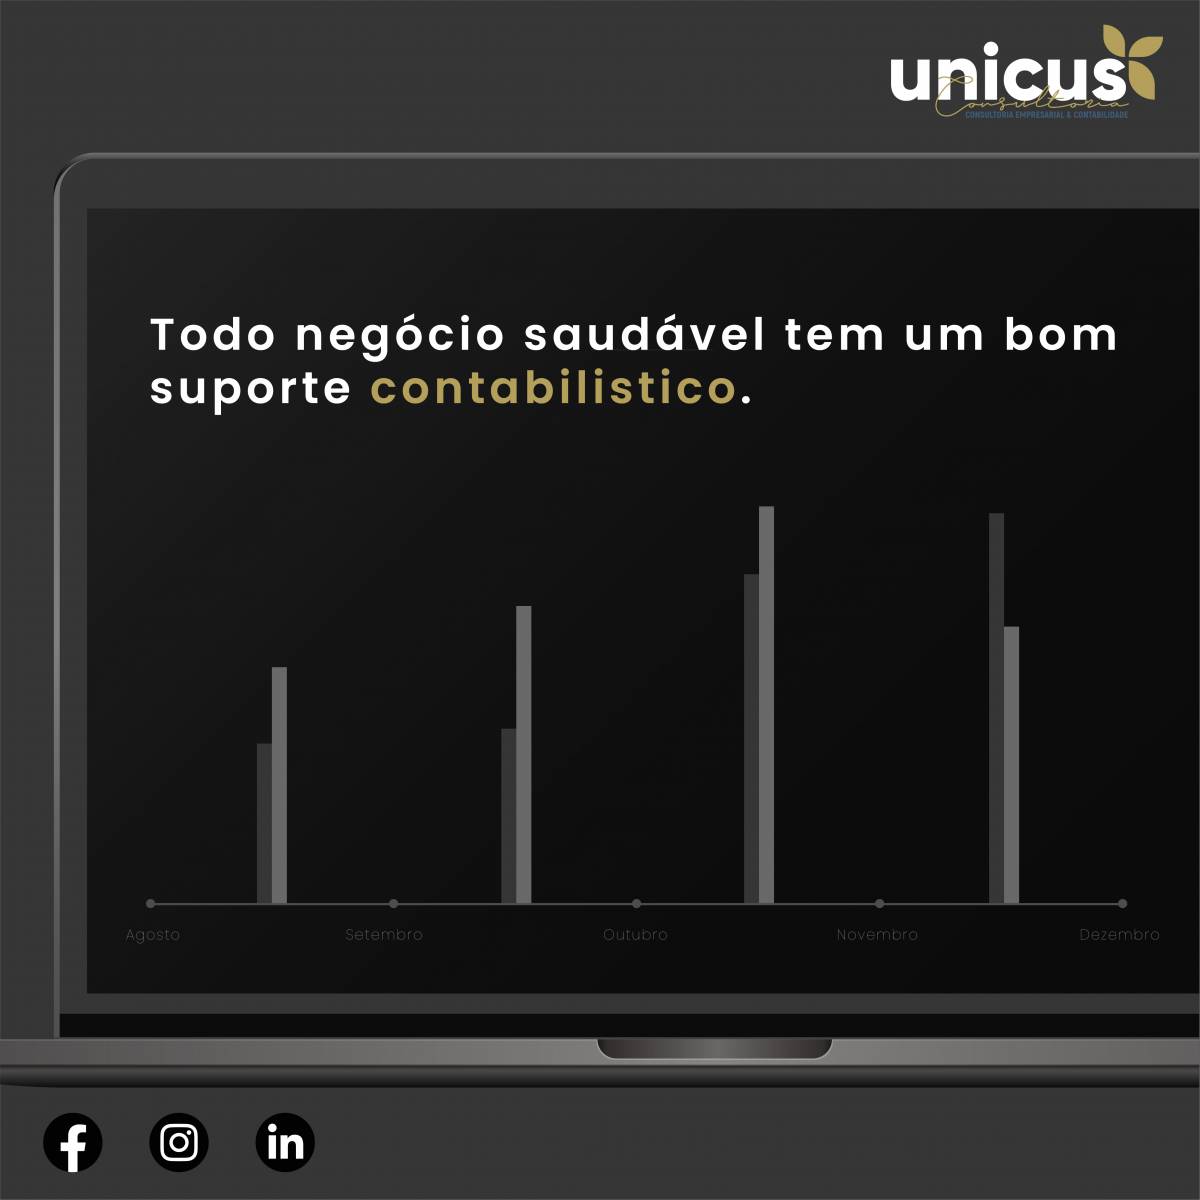 Unicus Brand - Barreiro - Desenvolvimento de Aplicações iOS